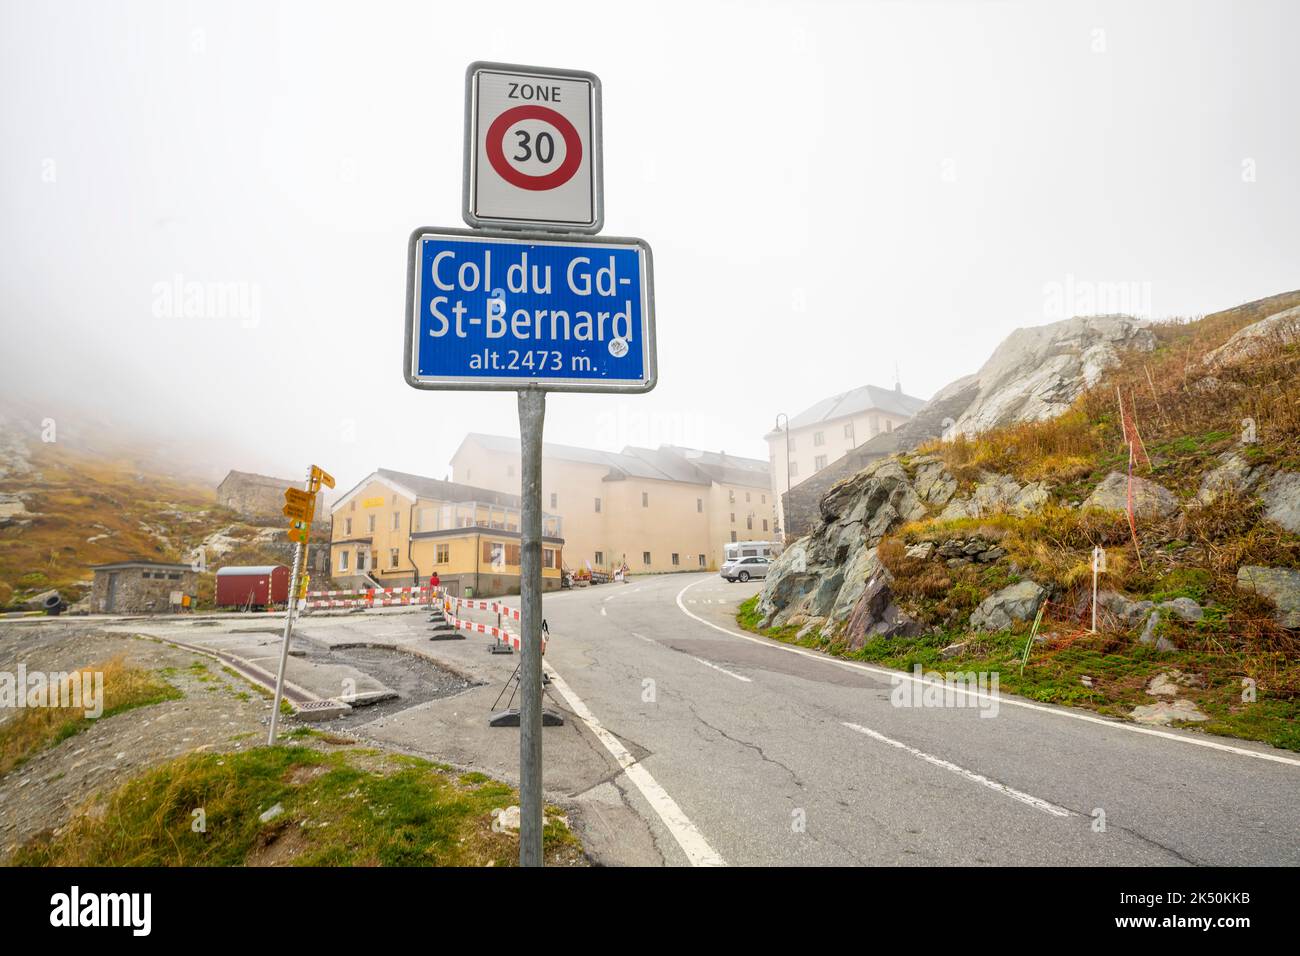 Cartello stradale al passo col du Grand St-Bernard (alt. 2473 m.. Confine tra Svizzera e Italia. Foto Stock